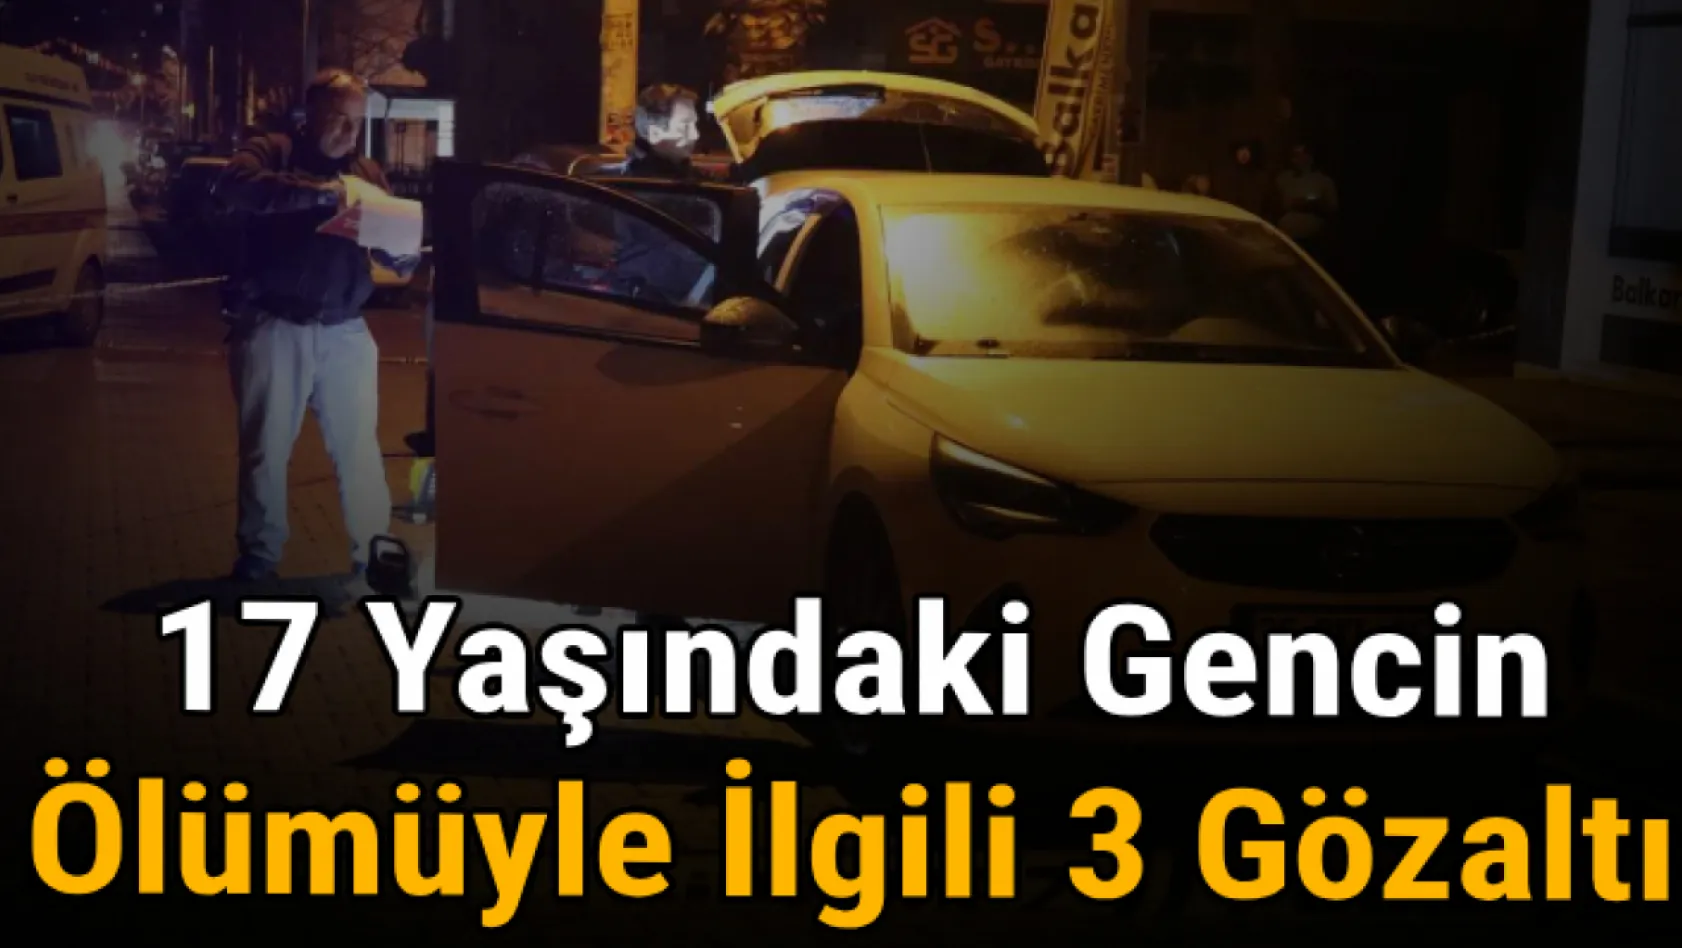 İzmir'de 17 yaşındaki gencin ölümüyle ilgili 3 gözaltı